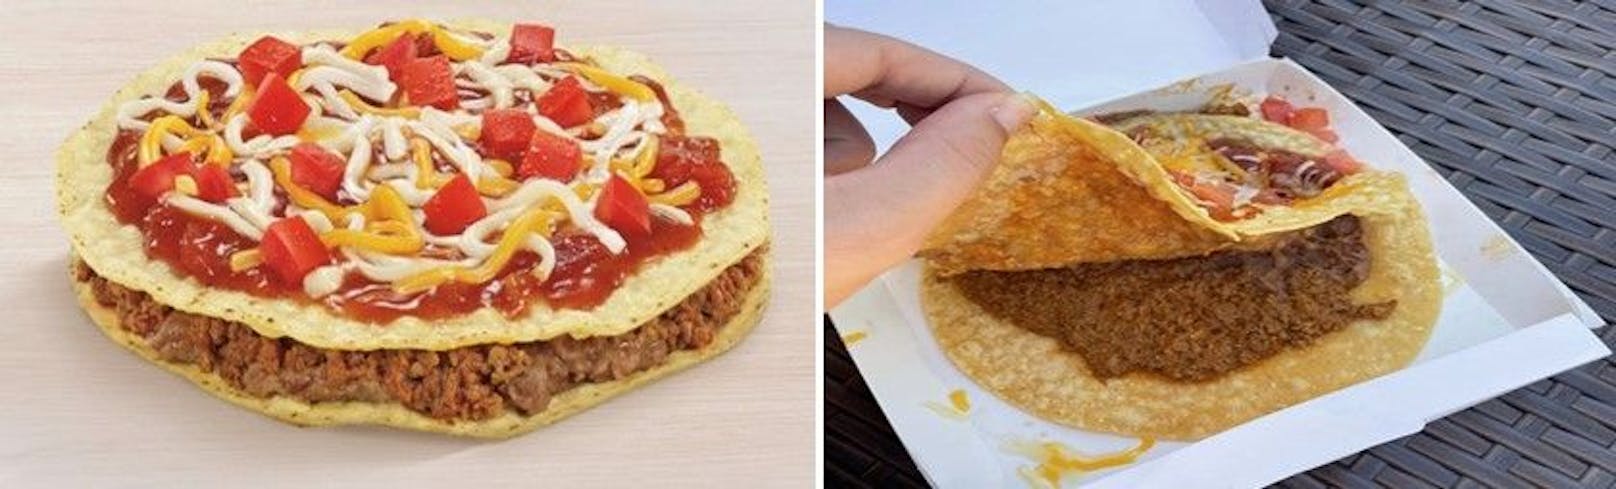 Links: Die "Veggie Mexican Pizza" wie sie in der Werbung verkauft wird. Rechts: Was die Konsumenten bekommen.